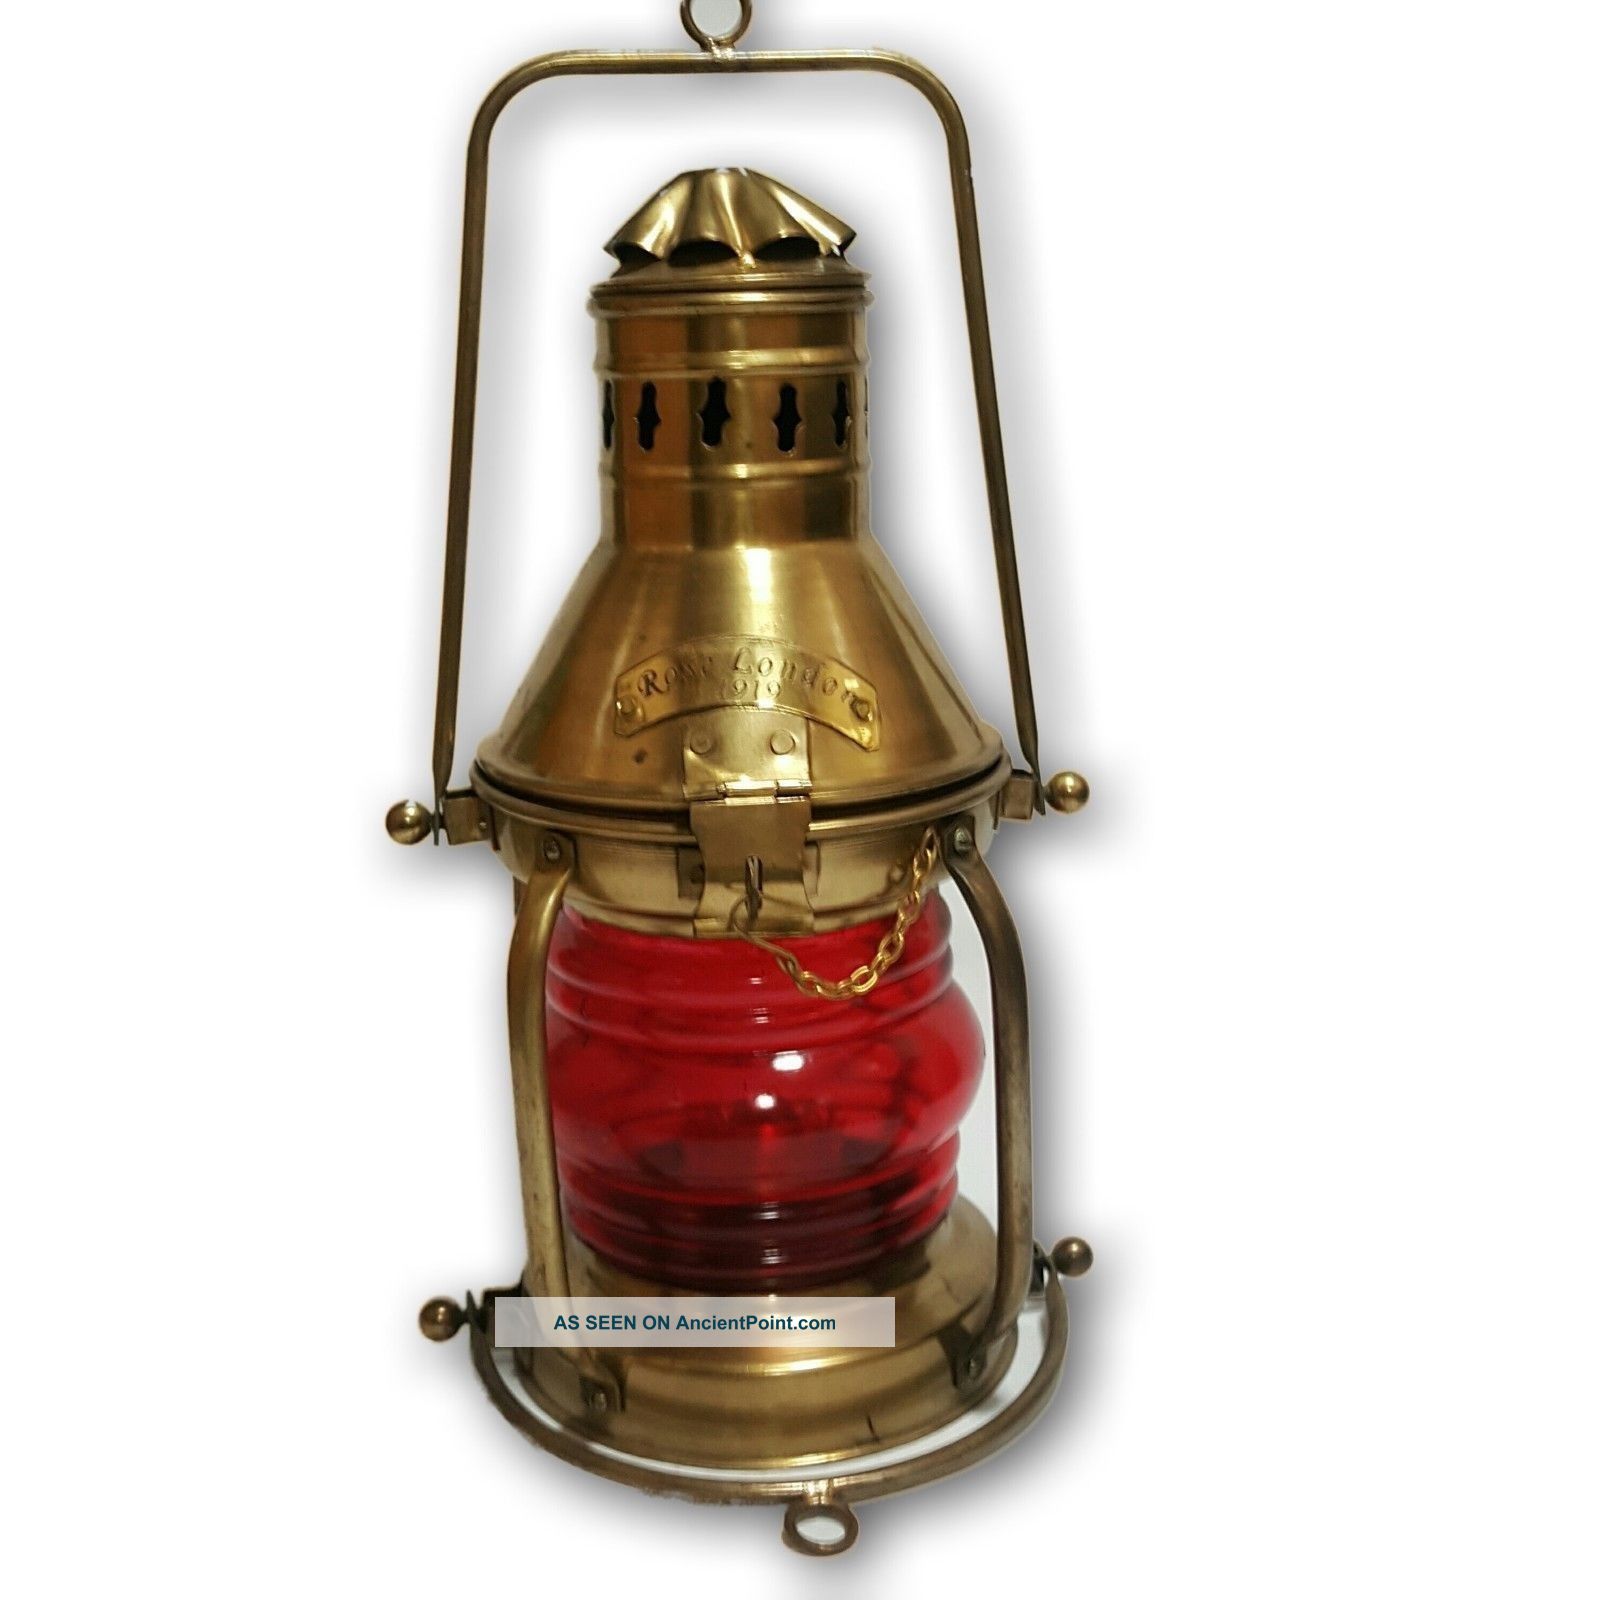 Antique Lantern Ship ' S Kerosene Lamps & Lighting Vintage Red Glass V15usf Ml 04 Compasses photo